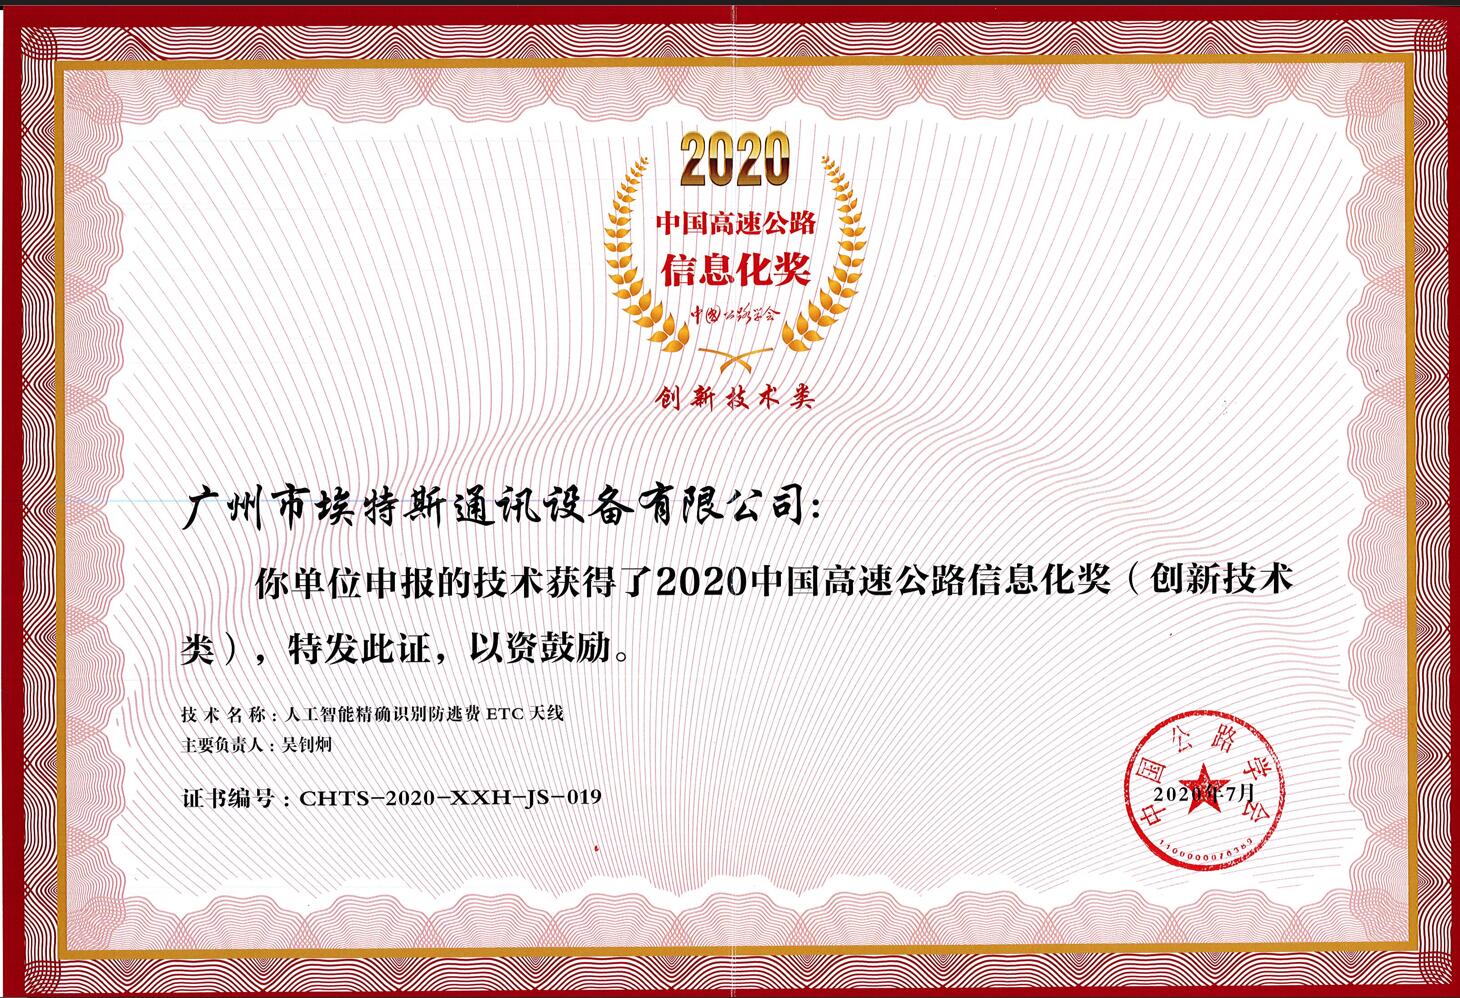 2020中国高速公路信息化奖.jpg